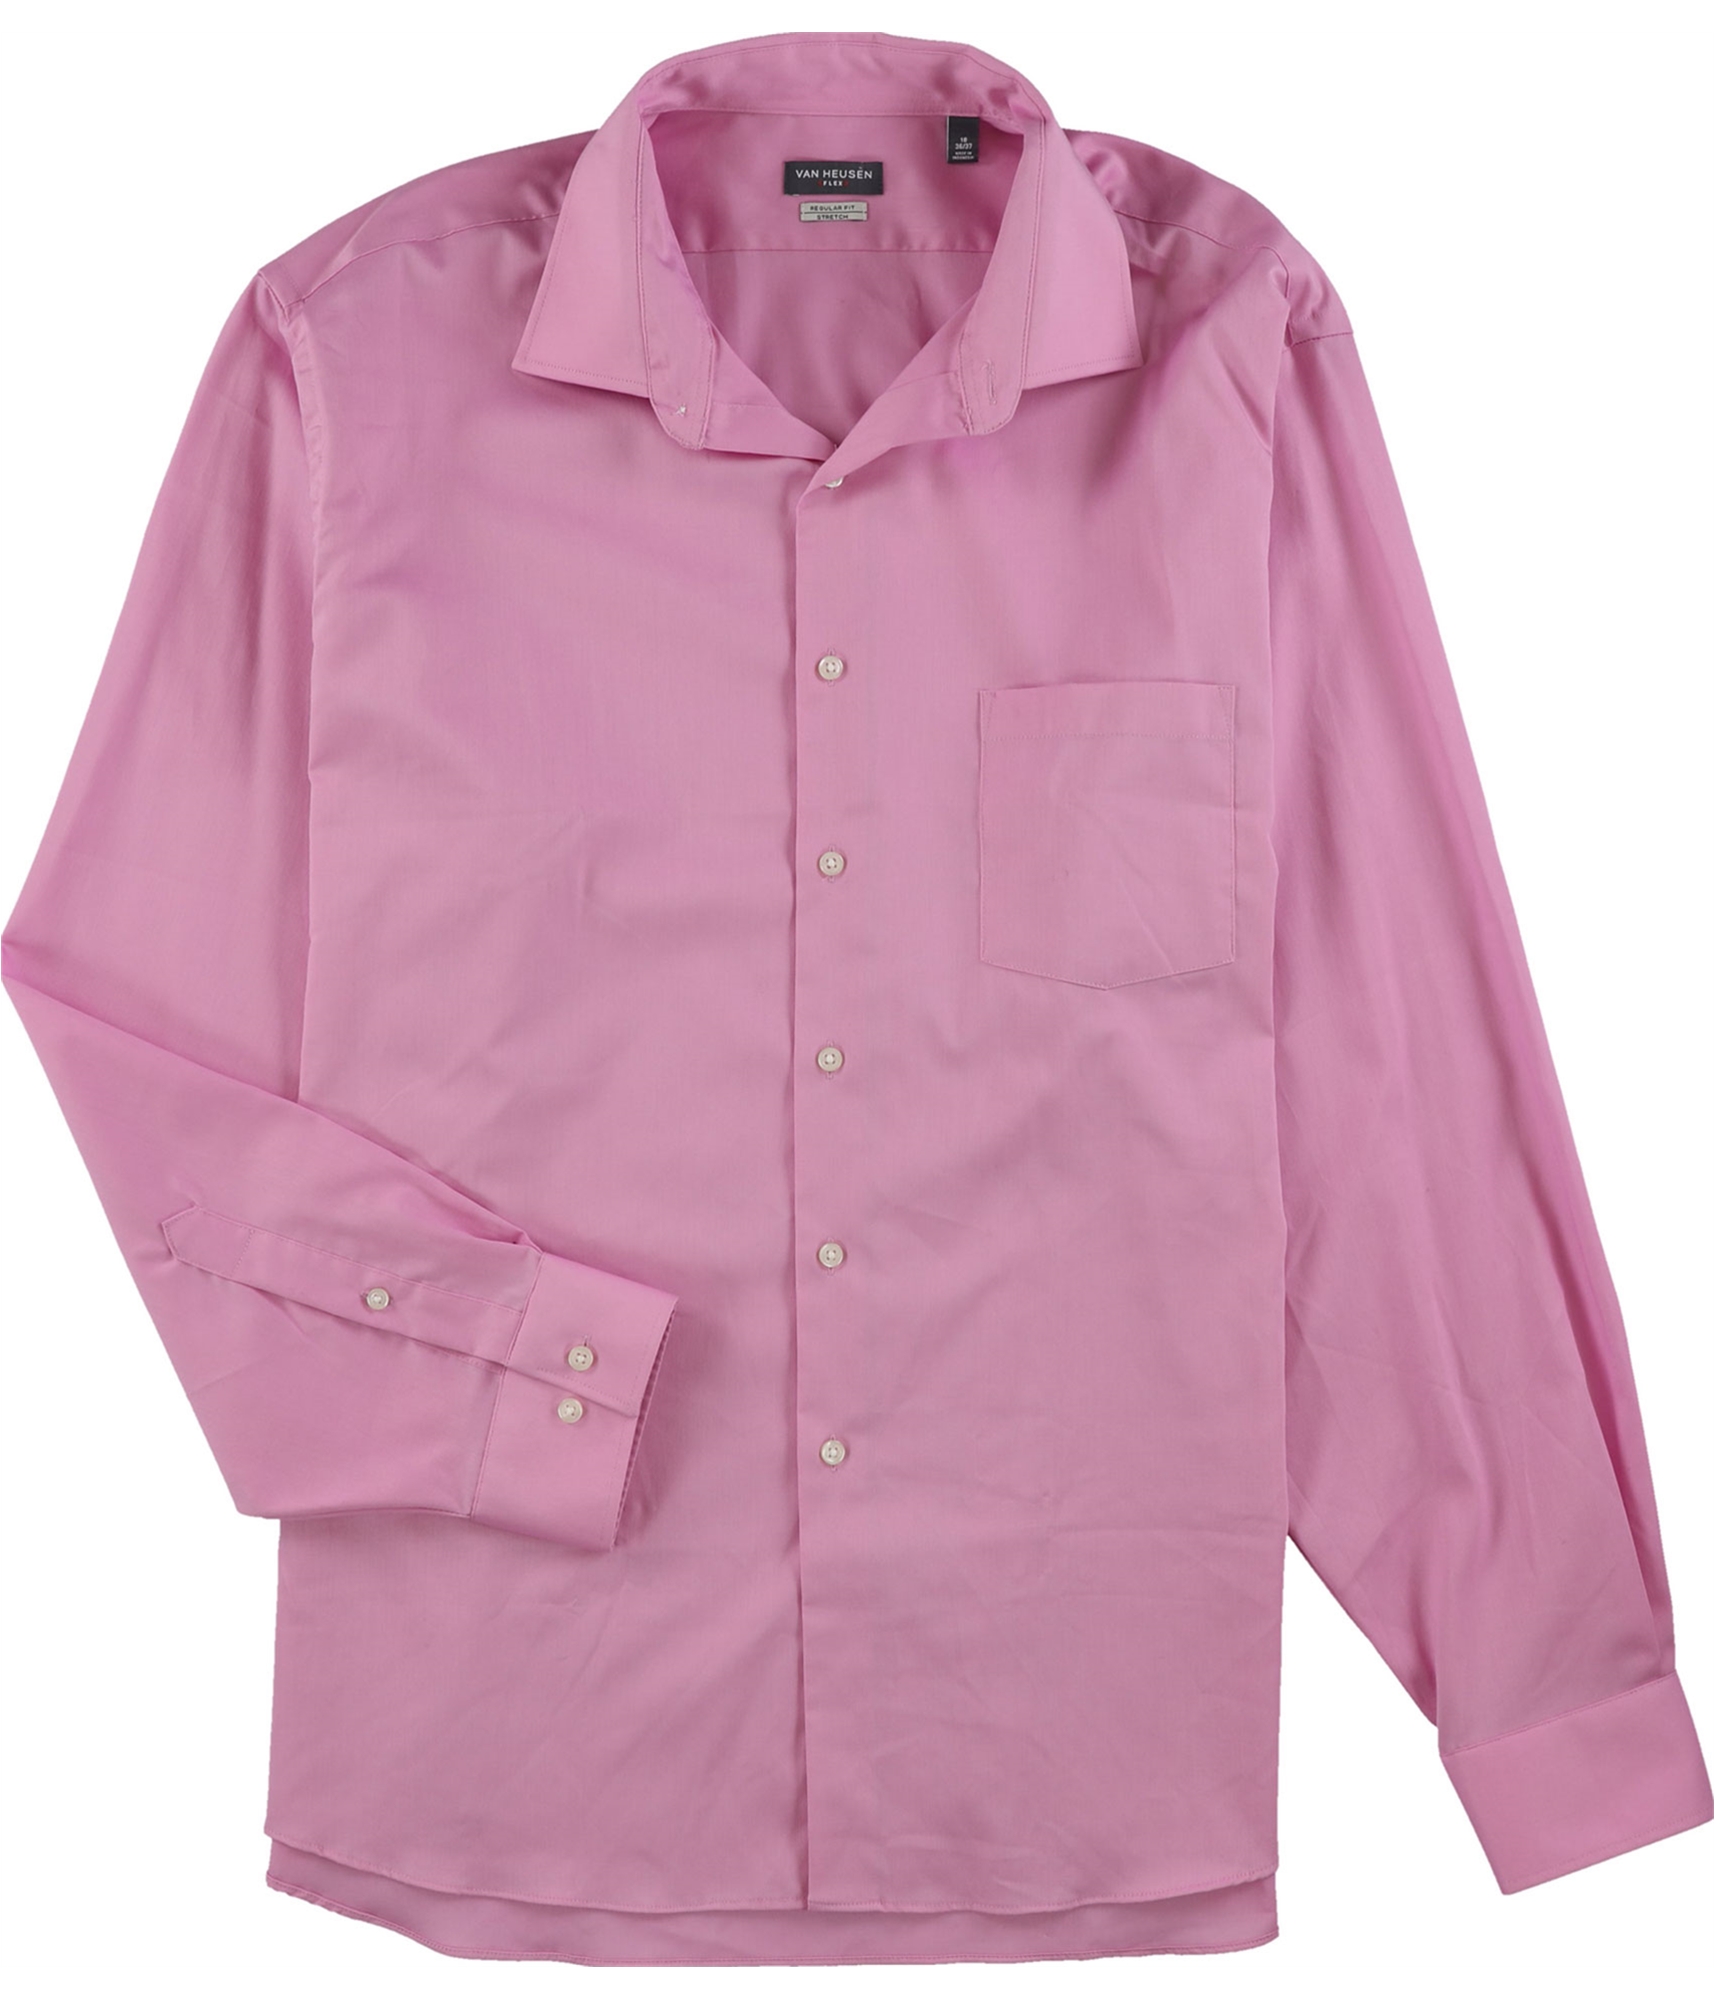 van heusen pink shirt